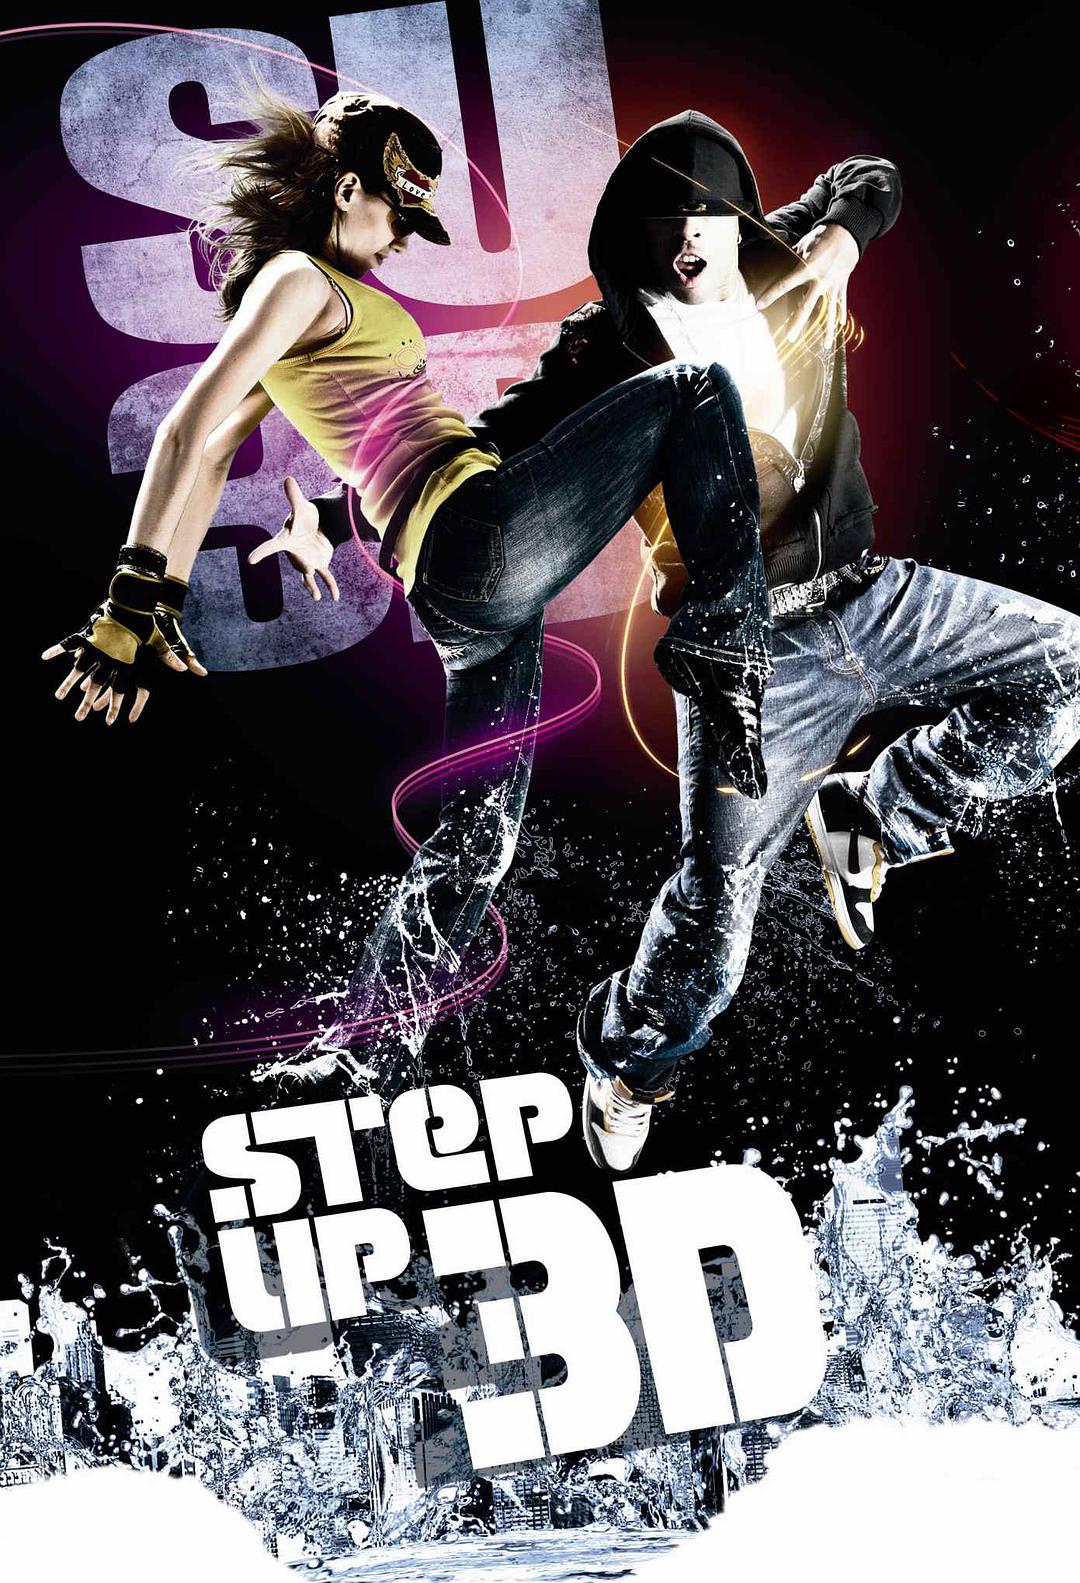 舞出我人生3 蓝光原盘下载+高清MKV版/舞出真我3 / 舞法舞天3 / 舞力全開3D(台)  2010 Step Up 3D 36.3G